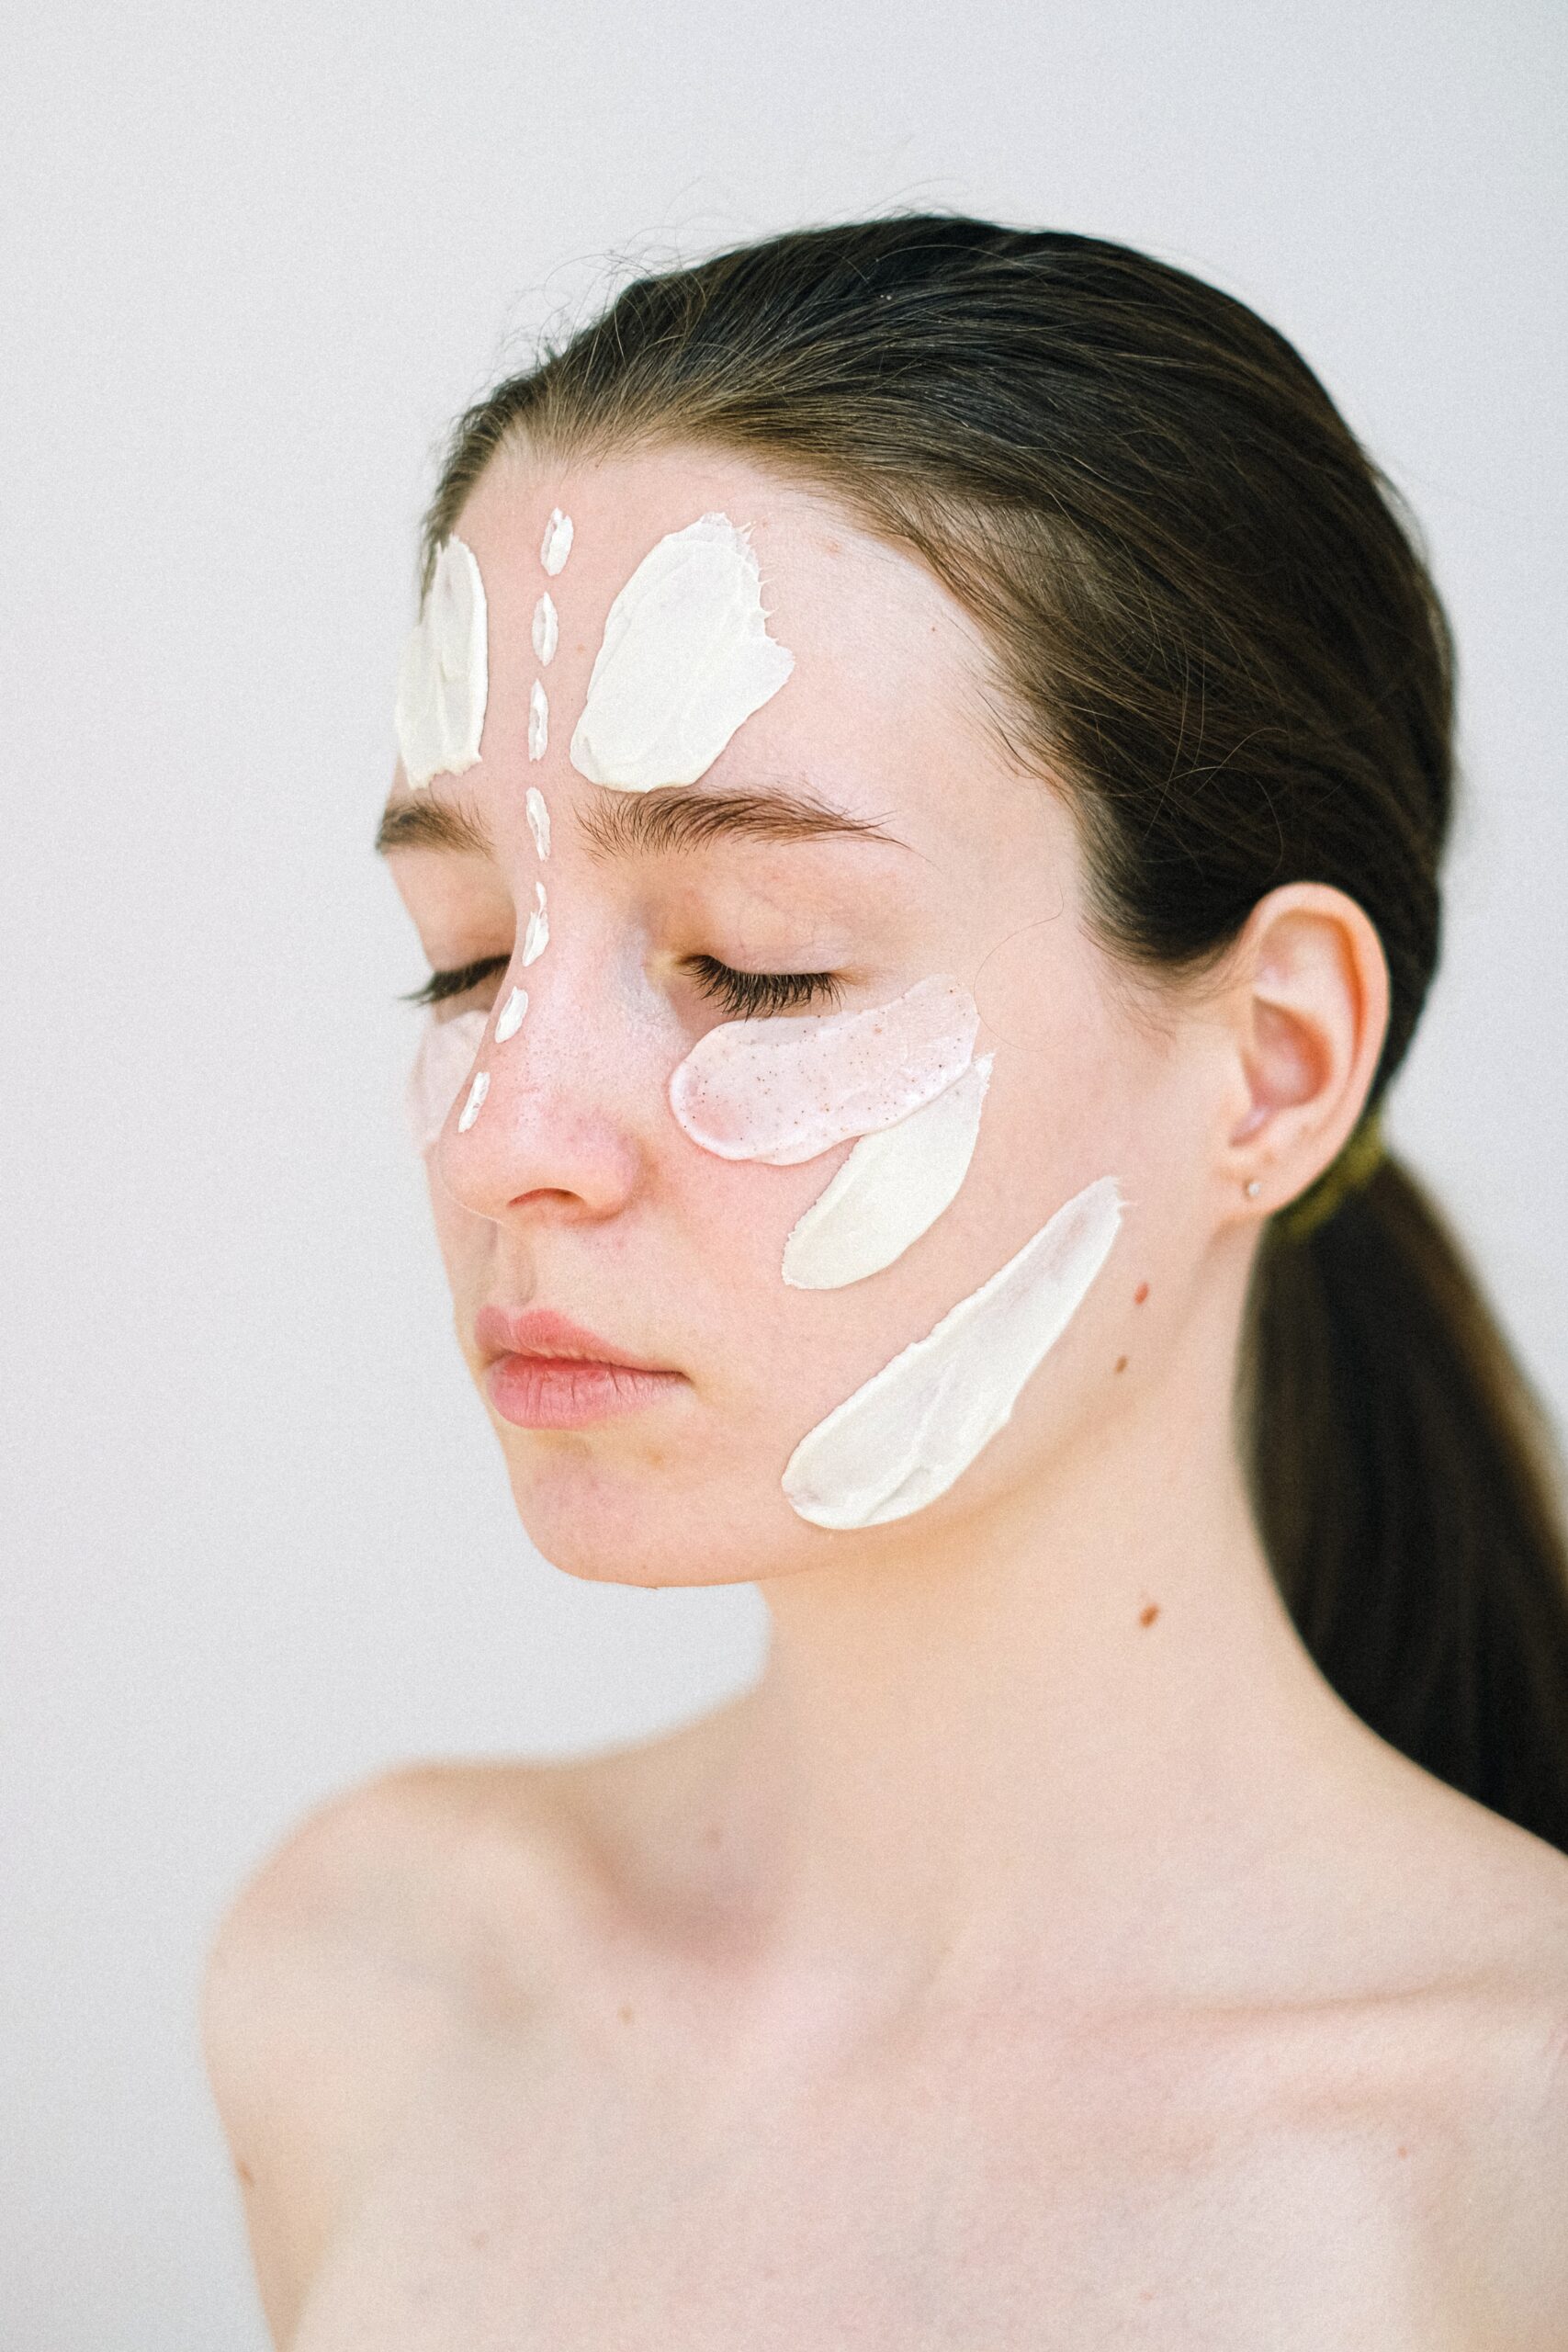 Scopri di più sull'articolo Studio di estetica Blurubino, l’arte della cura della pelle con i trattamenti viso dello